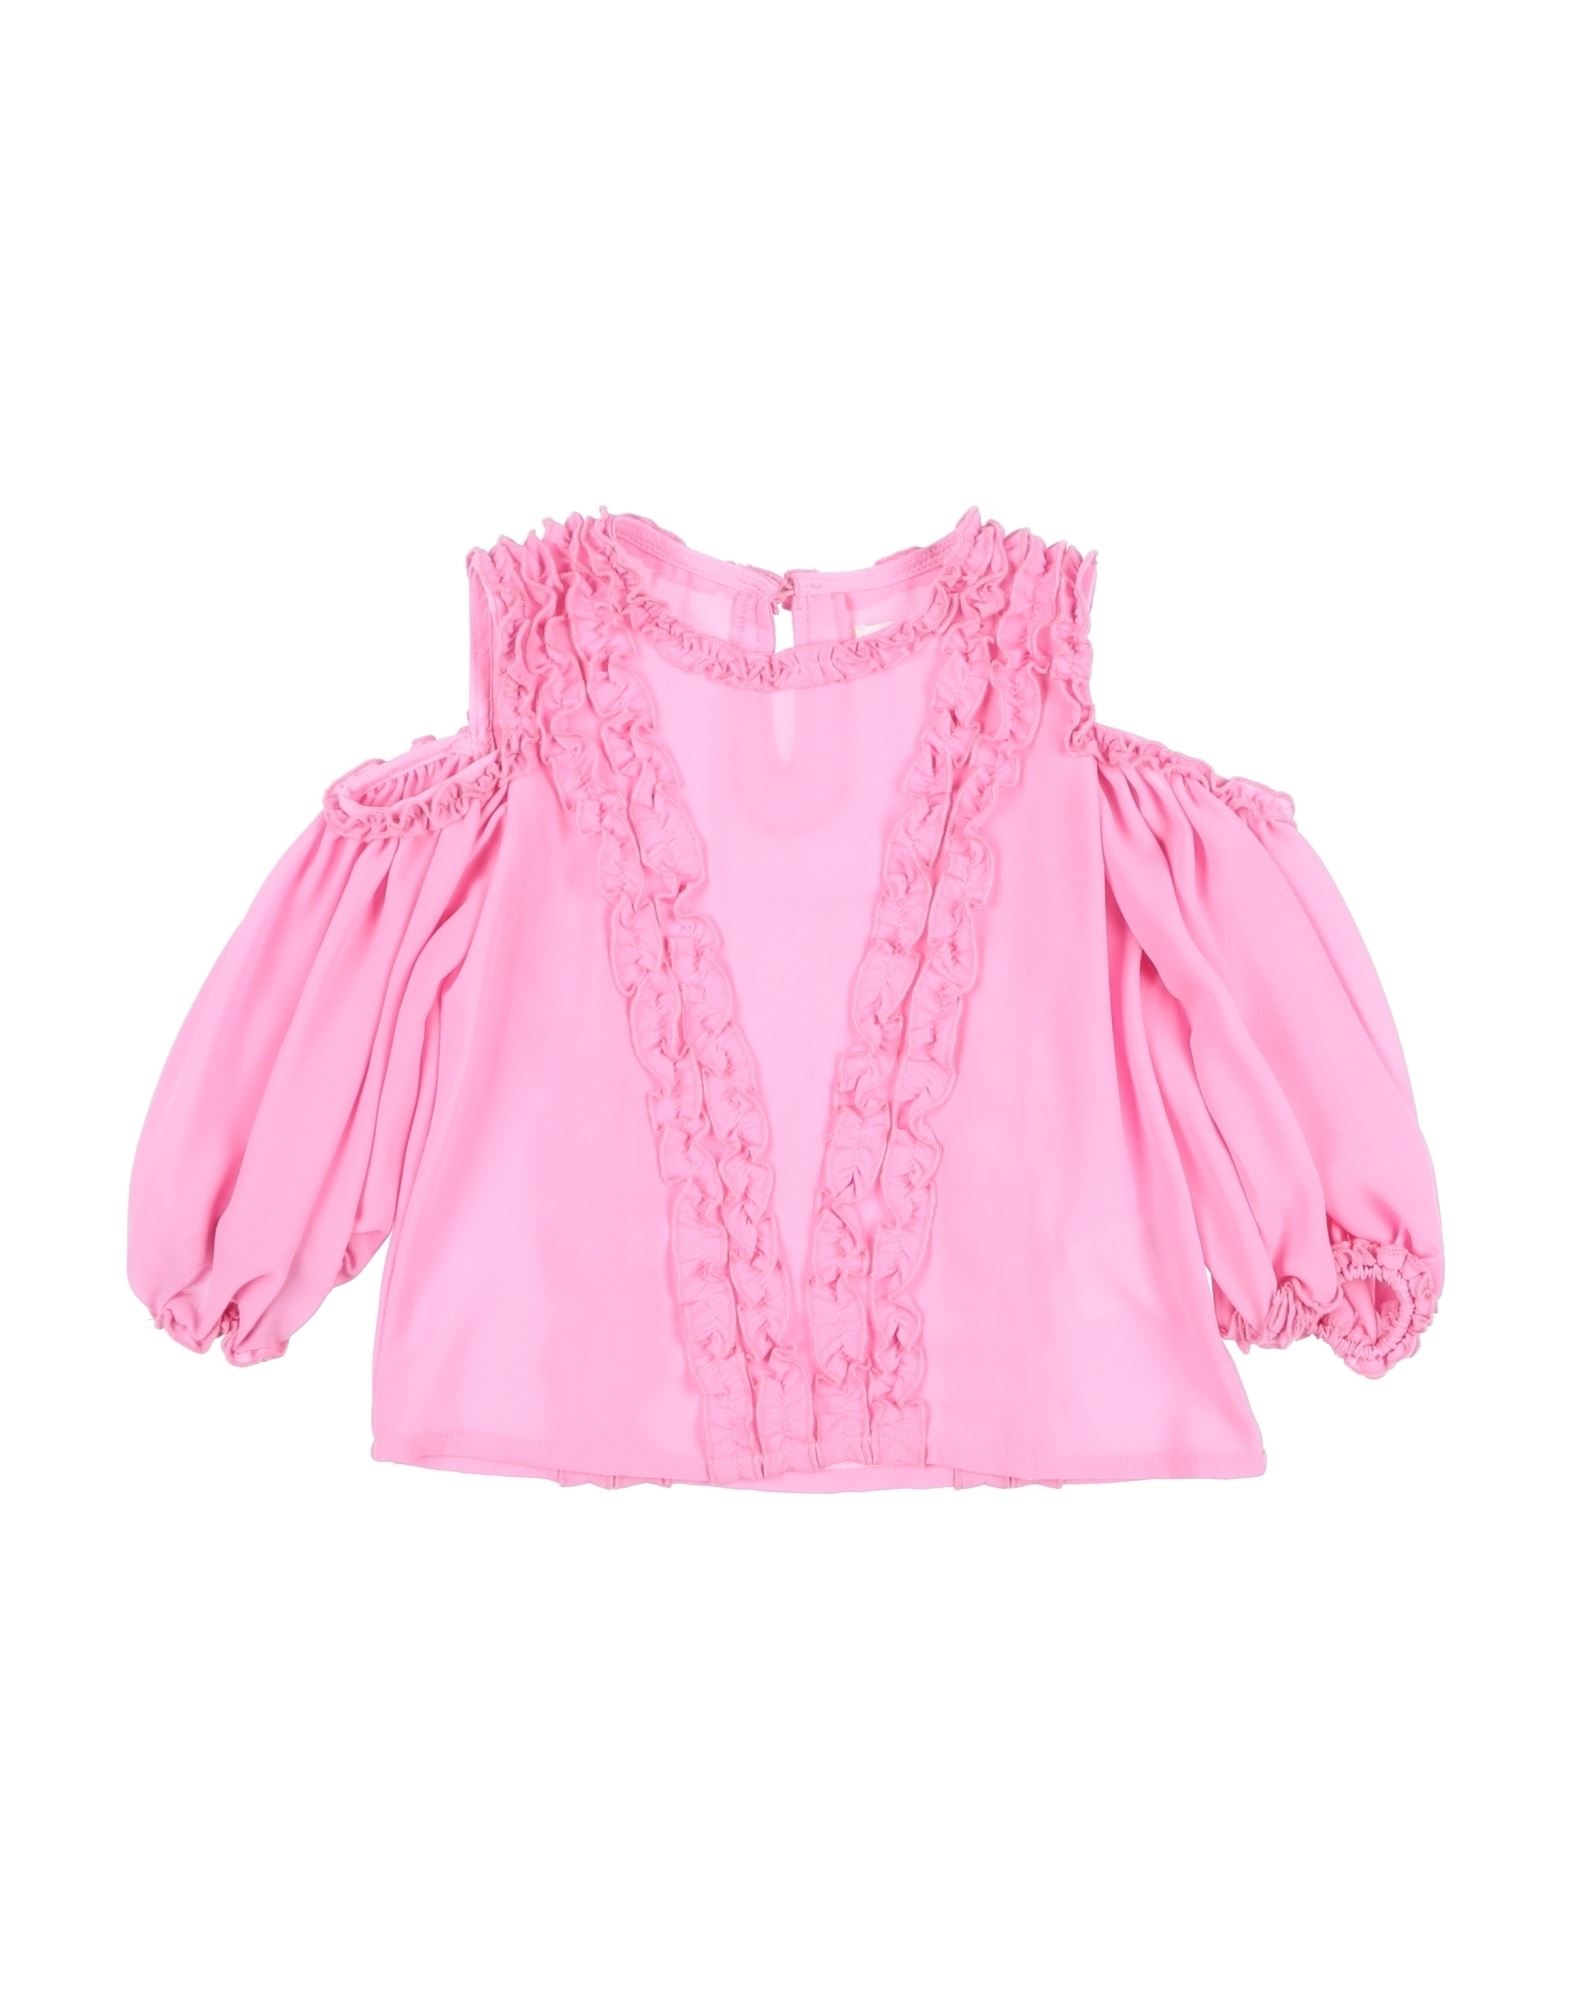 Fun & Fun Kids'  Toddler Girl Blouse Pink Size 4 Polyester